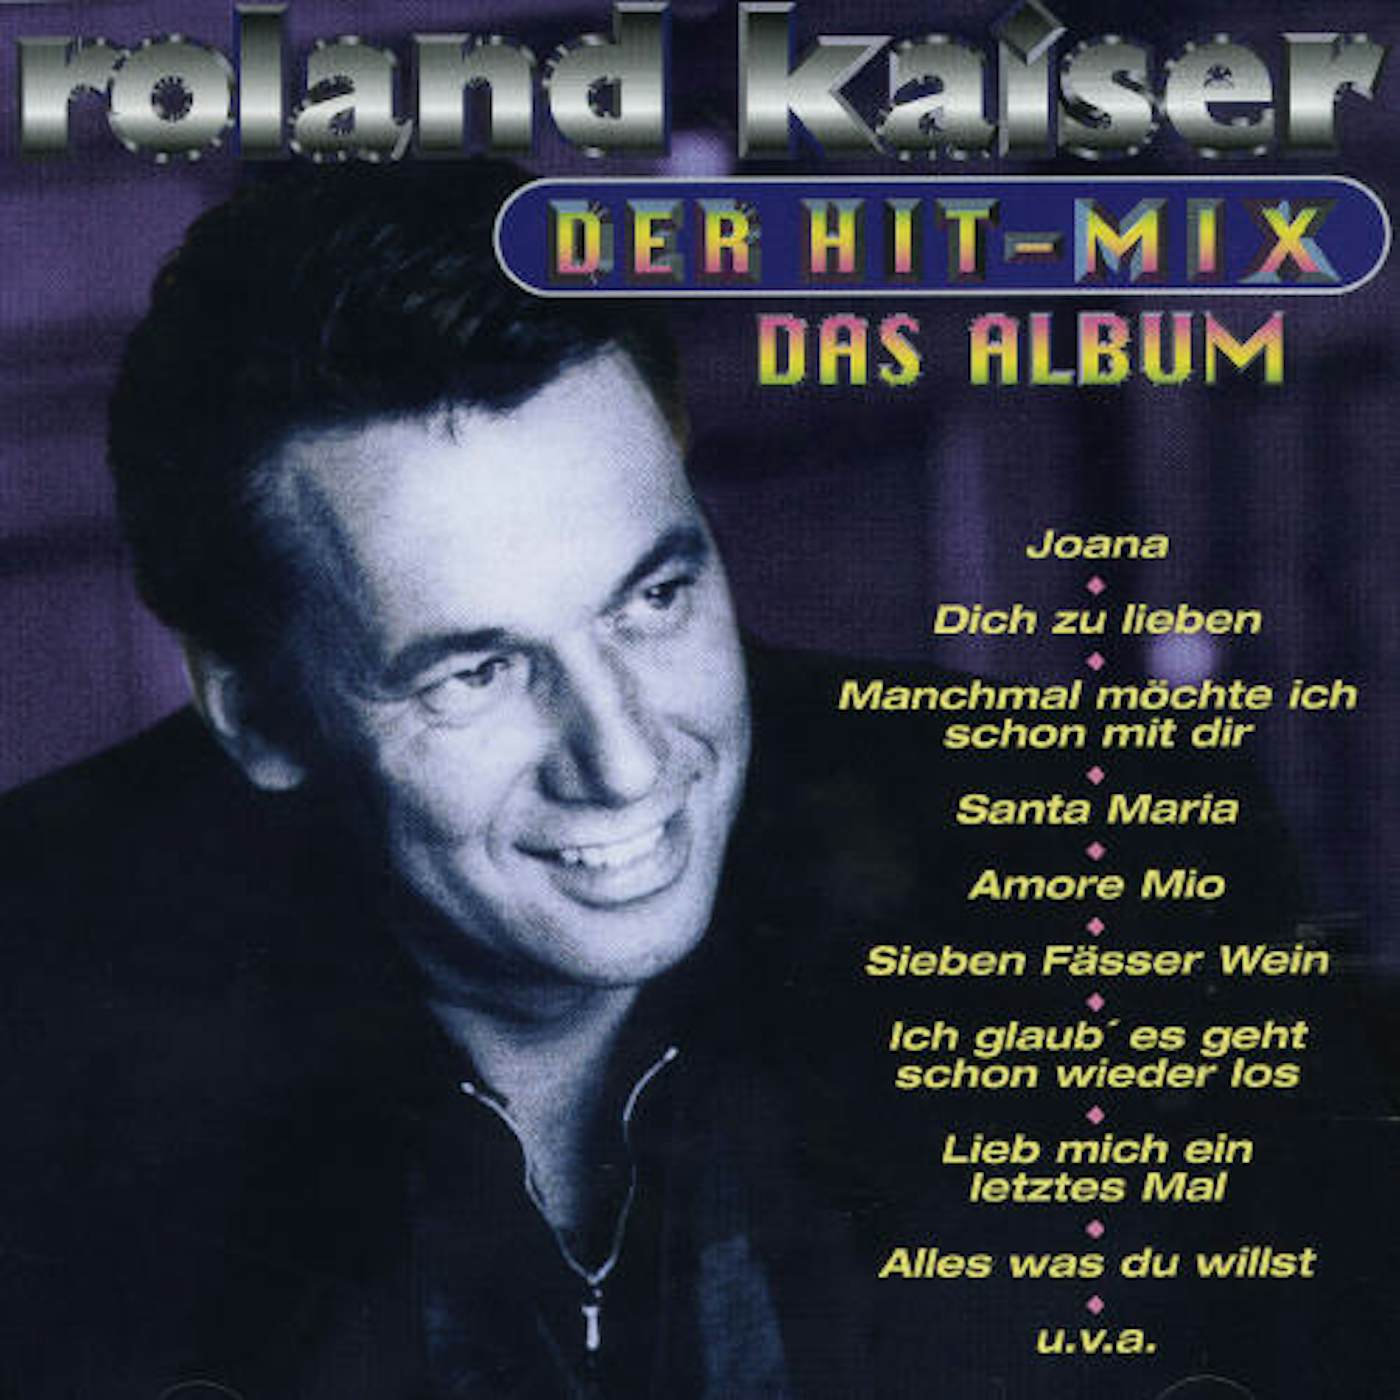 Roland Kaiser DER HIT-MIX DAS ALBUM CD